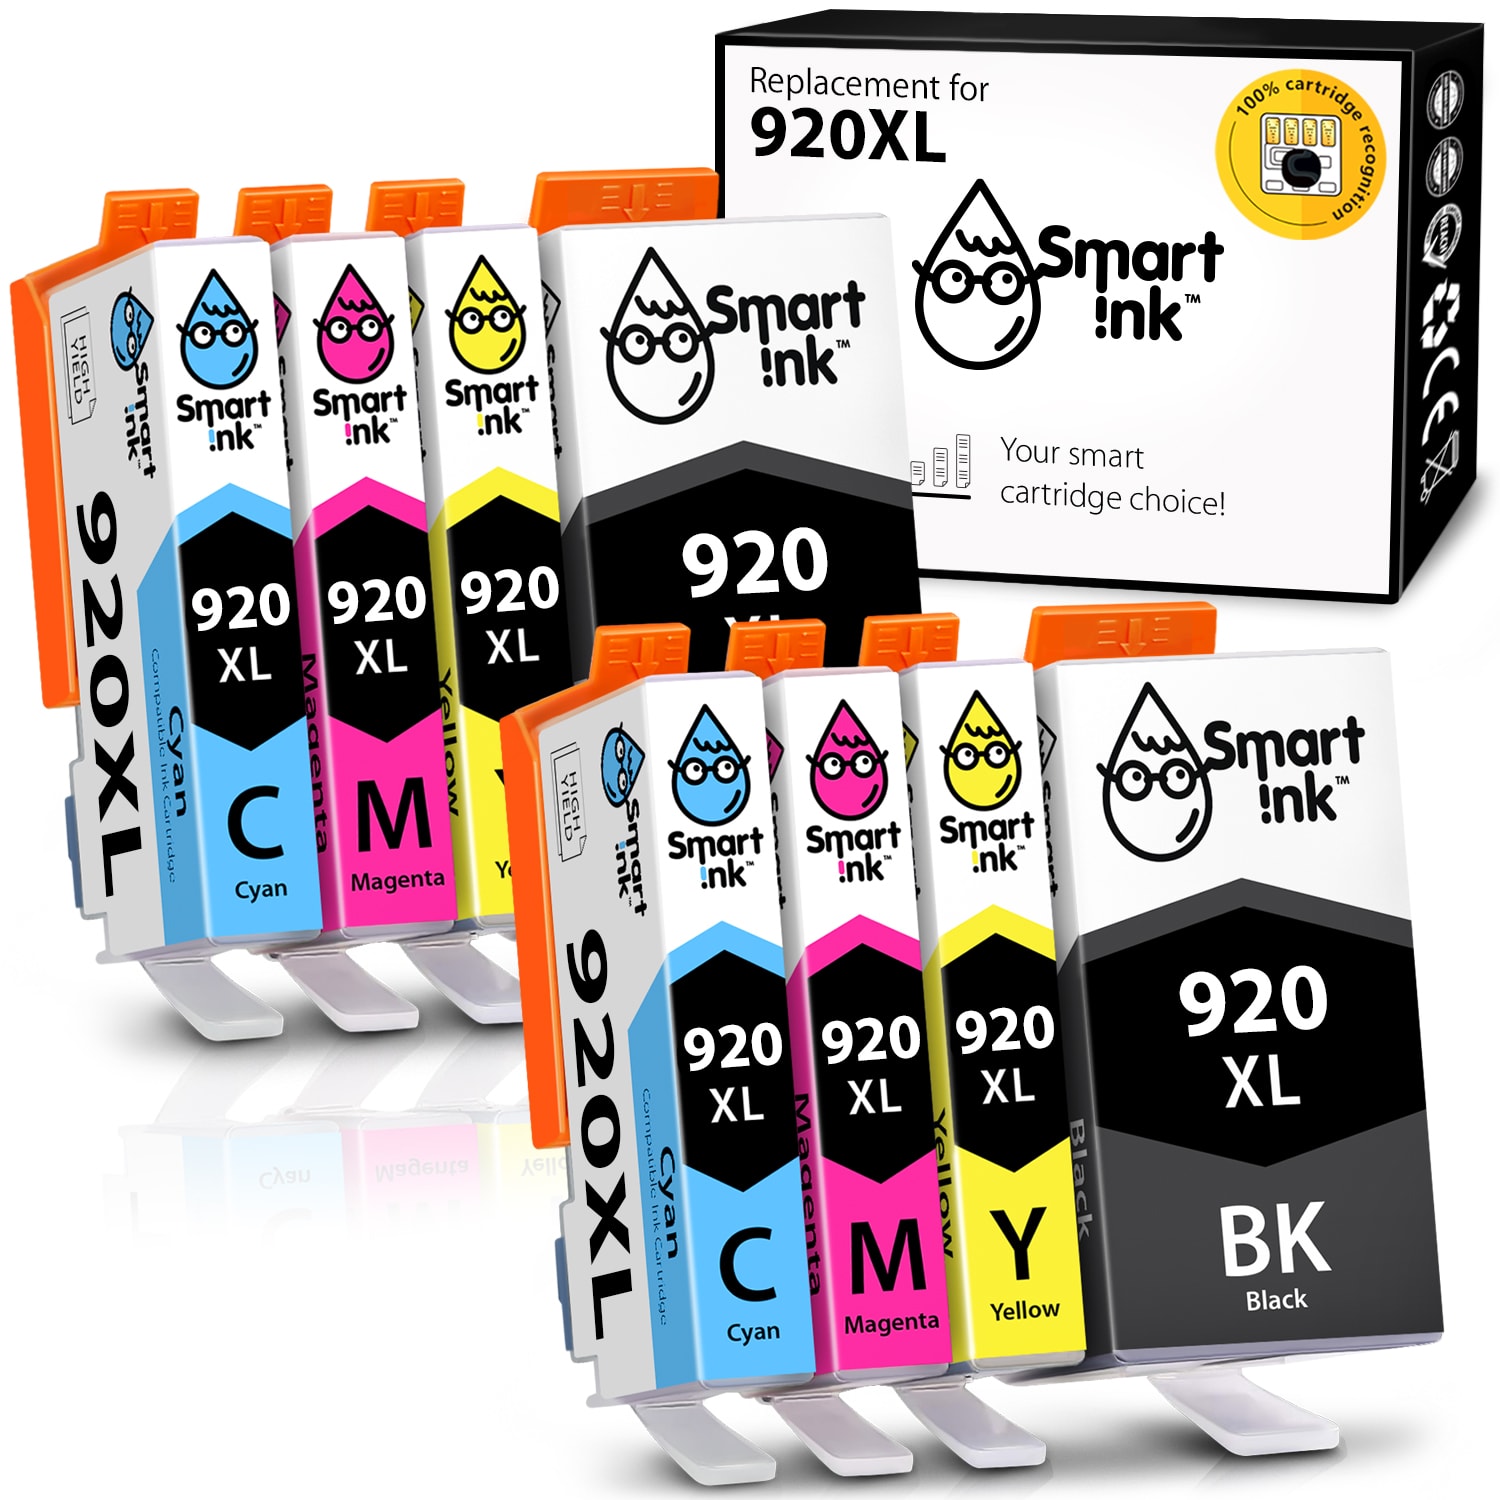 forståelse kondensator Broom Get compatible HP 920 XL Ink Cartridges (8 Combo Pack) | Smart Ink